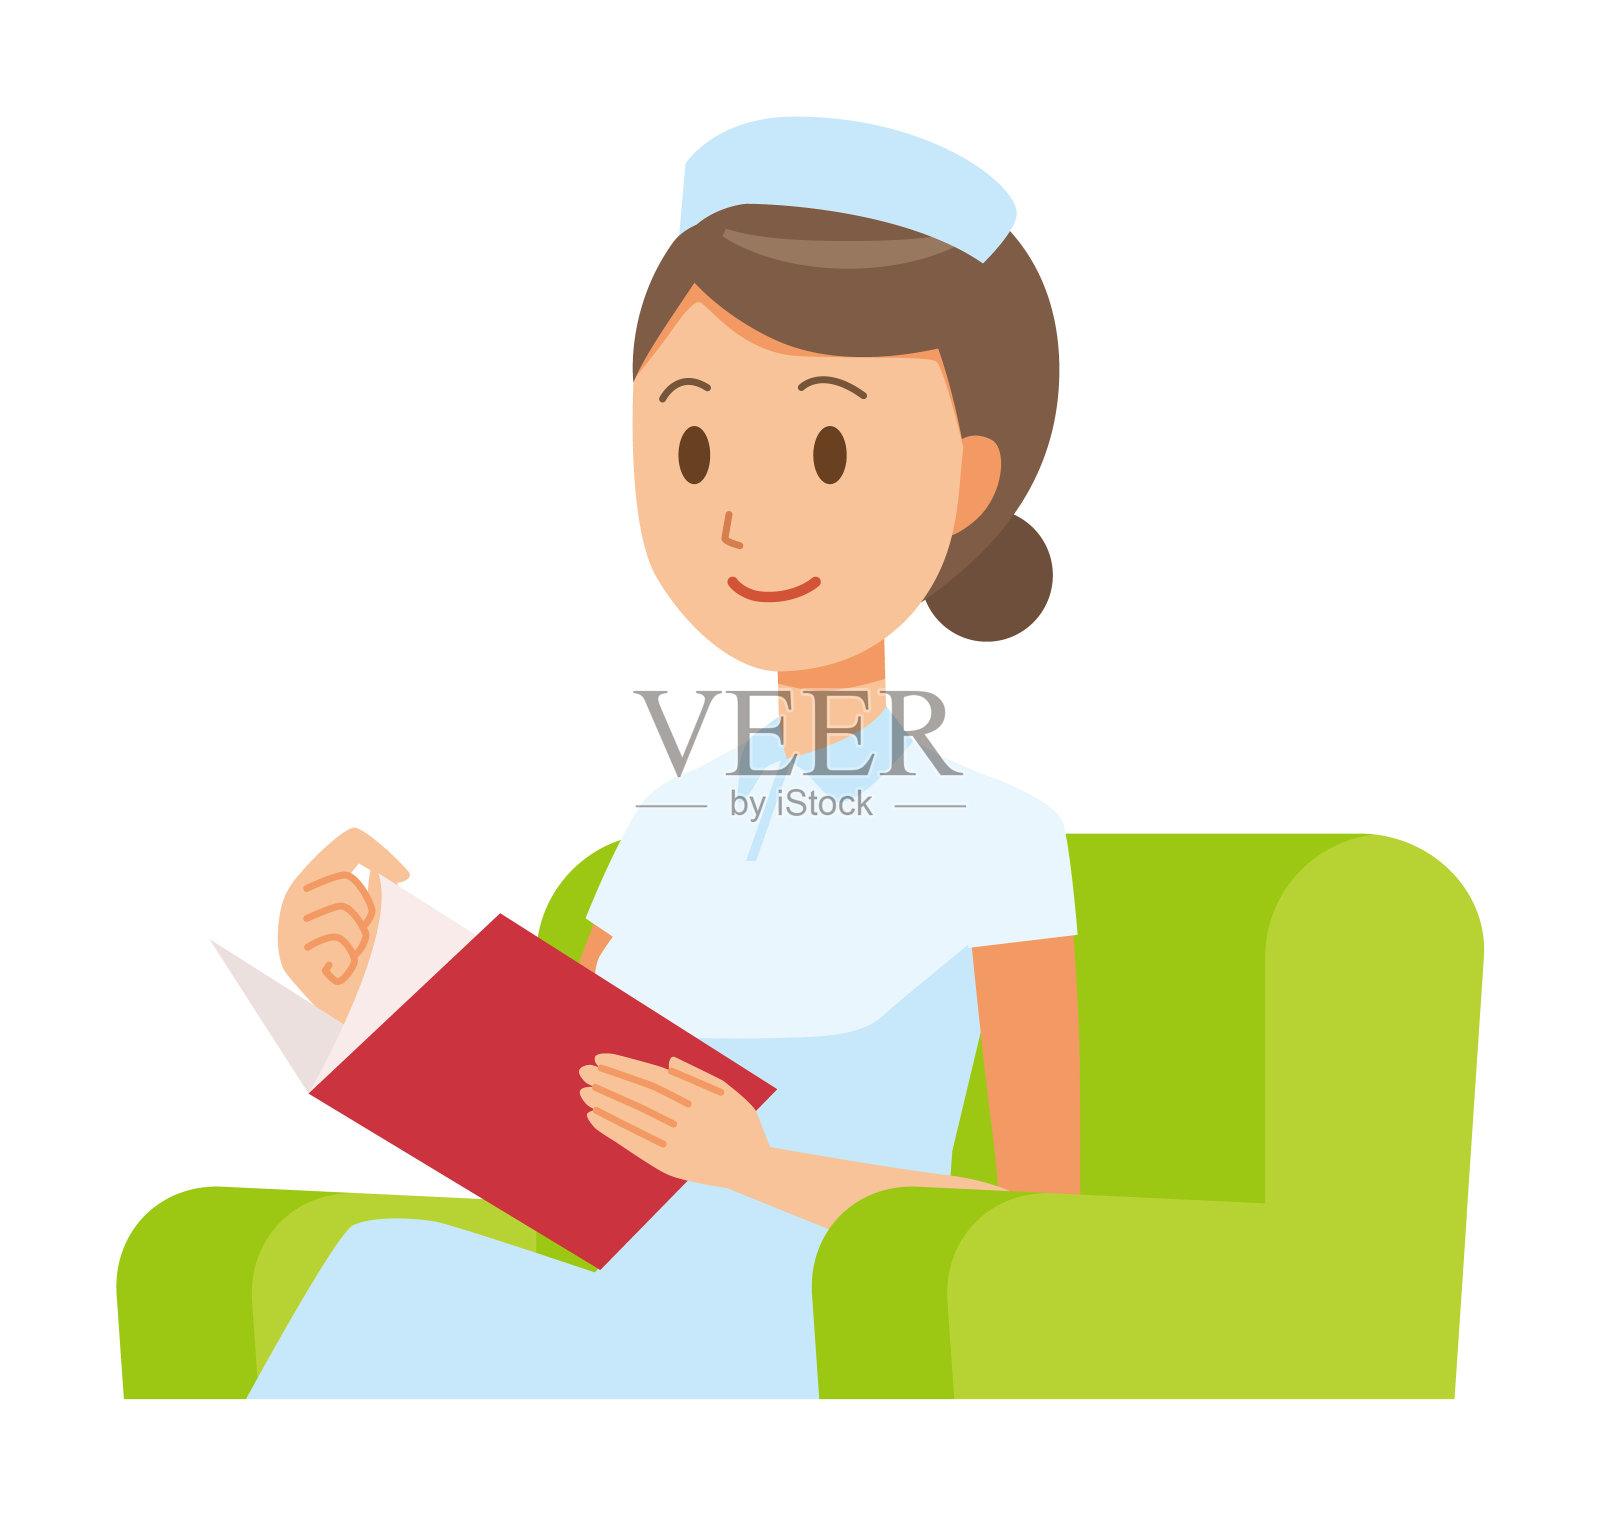 一个戴护士帽、穿白大褂的女护士坐在沙发上看书设计元素图片